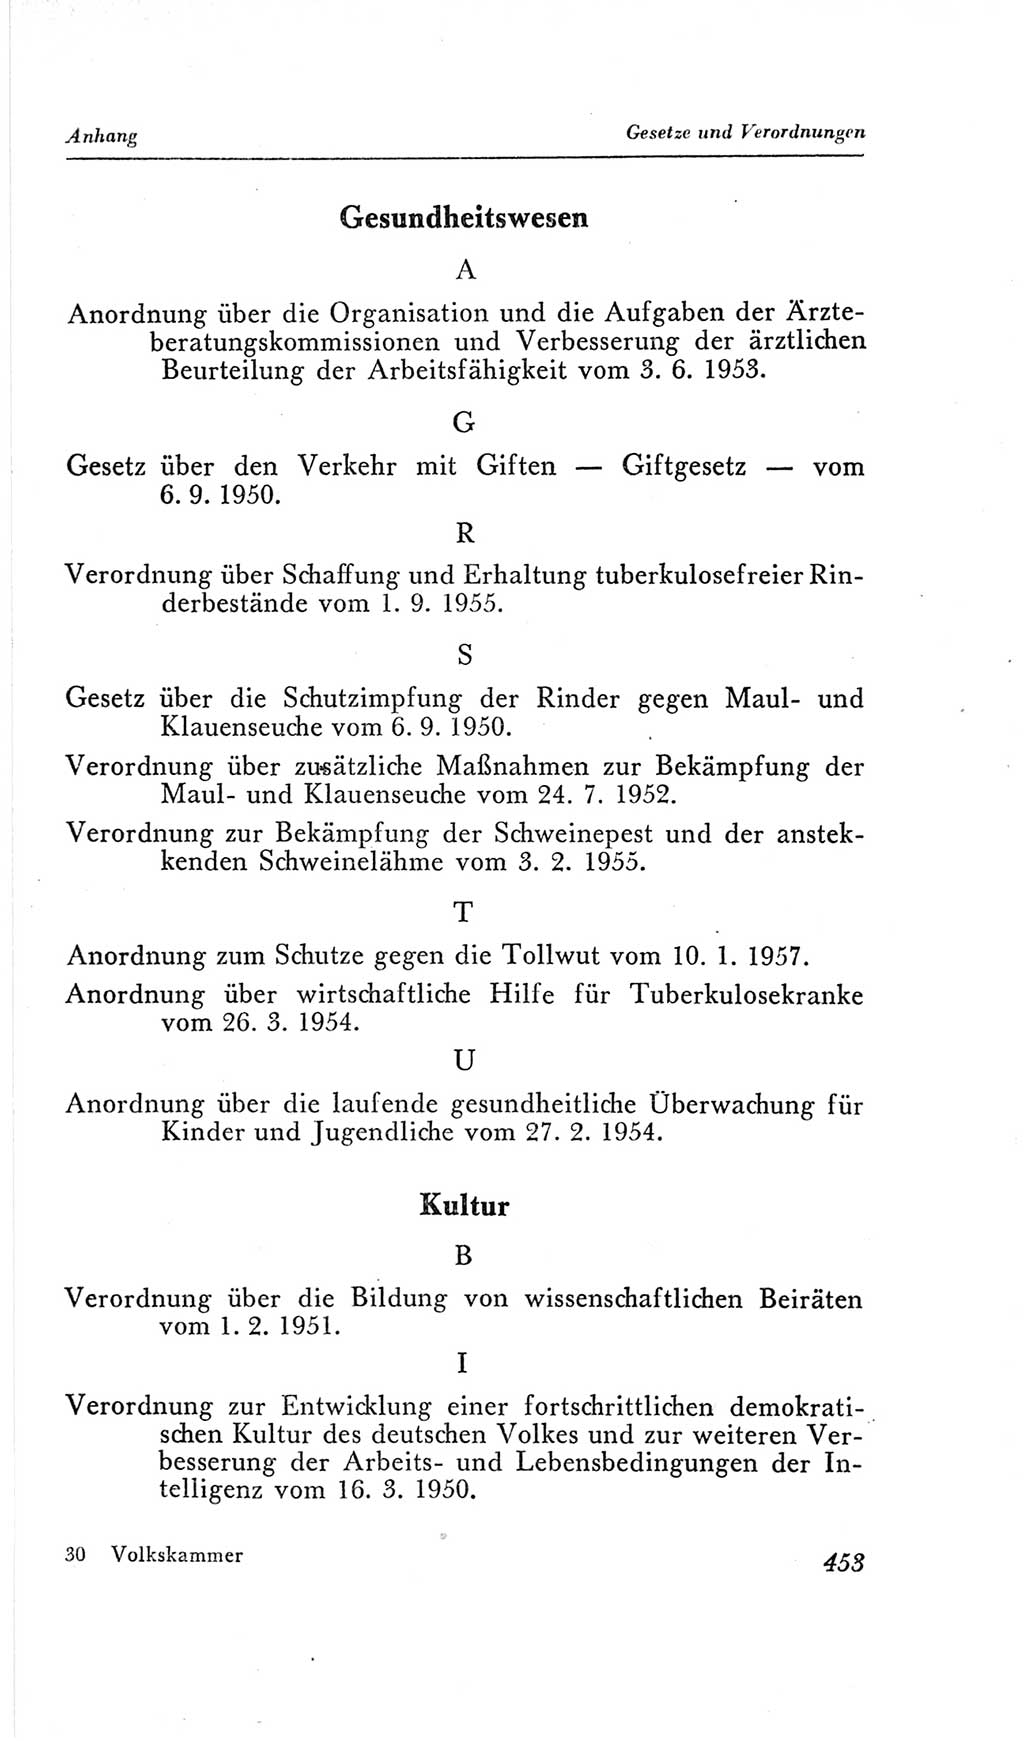 Handbuch der Volkskammer (VK) der Deutschen Demokratischen Republik (DDR), 2. Wahlperiode 1954-1958, Seite 453 (Hdb. VK. DDR, 2. WP. 1954-1958, S. 453)